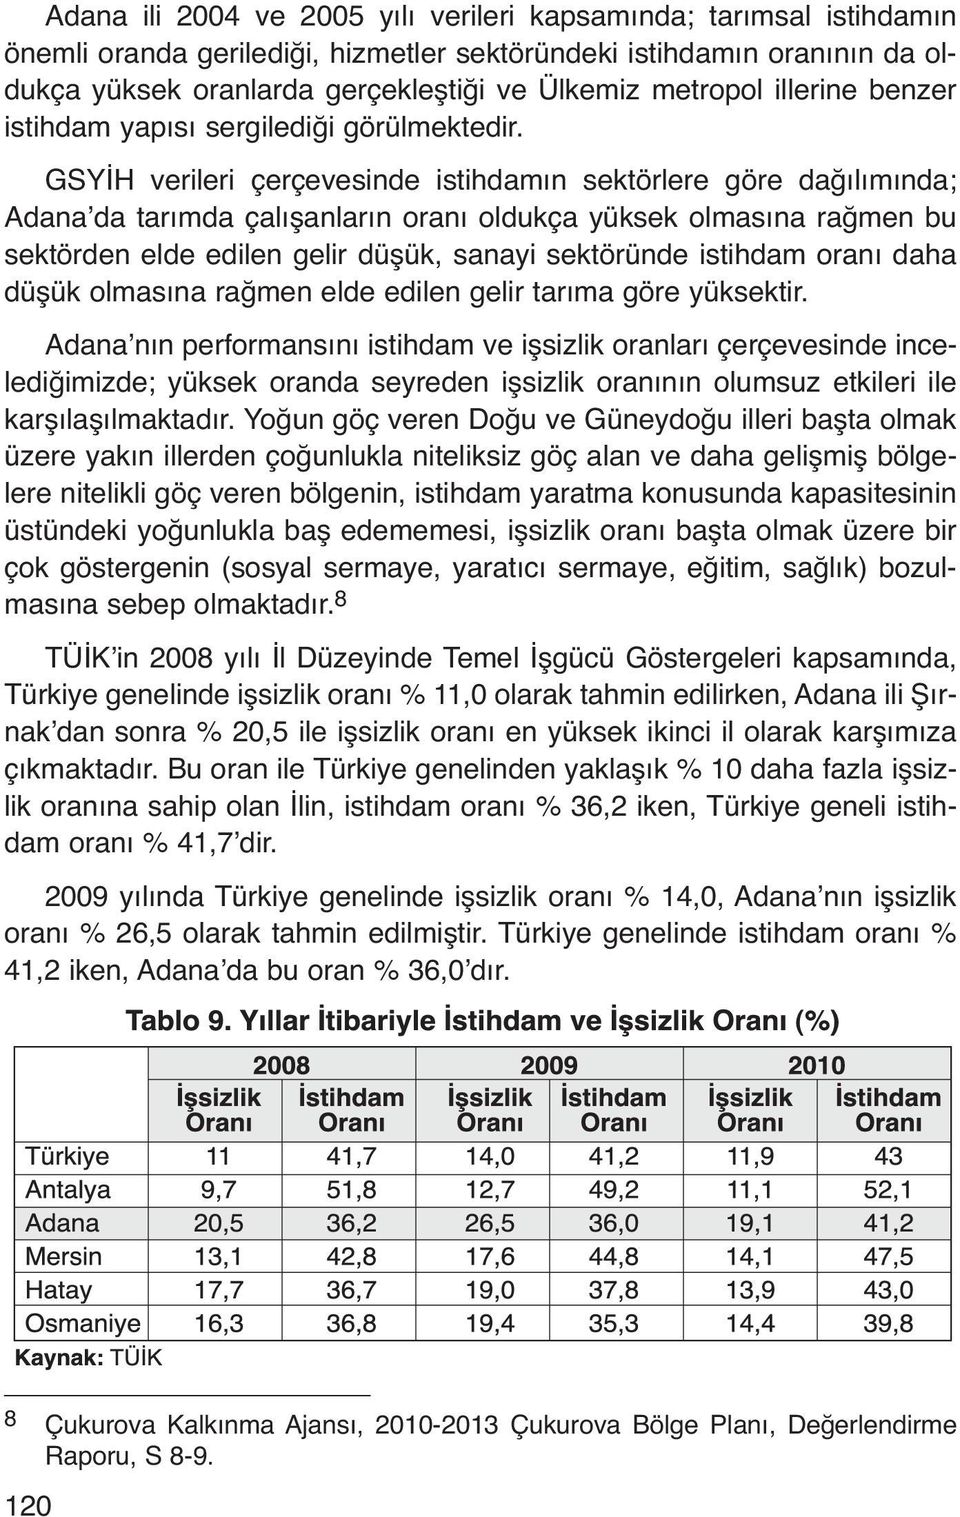 GSYİH verileri çerçevesinde istihdamın sektörlere göre dağılımında; Adana da tarımda çalışanların oranı oldukça yüksek olmasına rağmen bu sektörden elde edilen gelir düşük, sanayi sektöründe istihdam